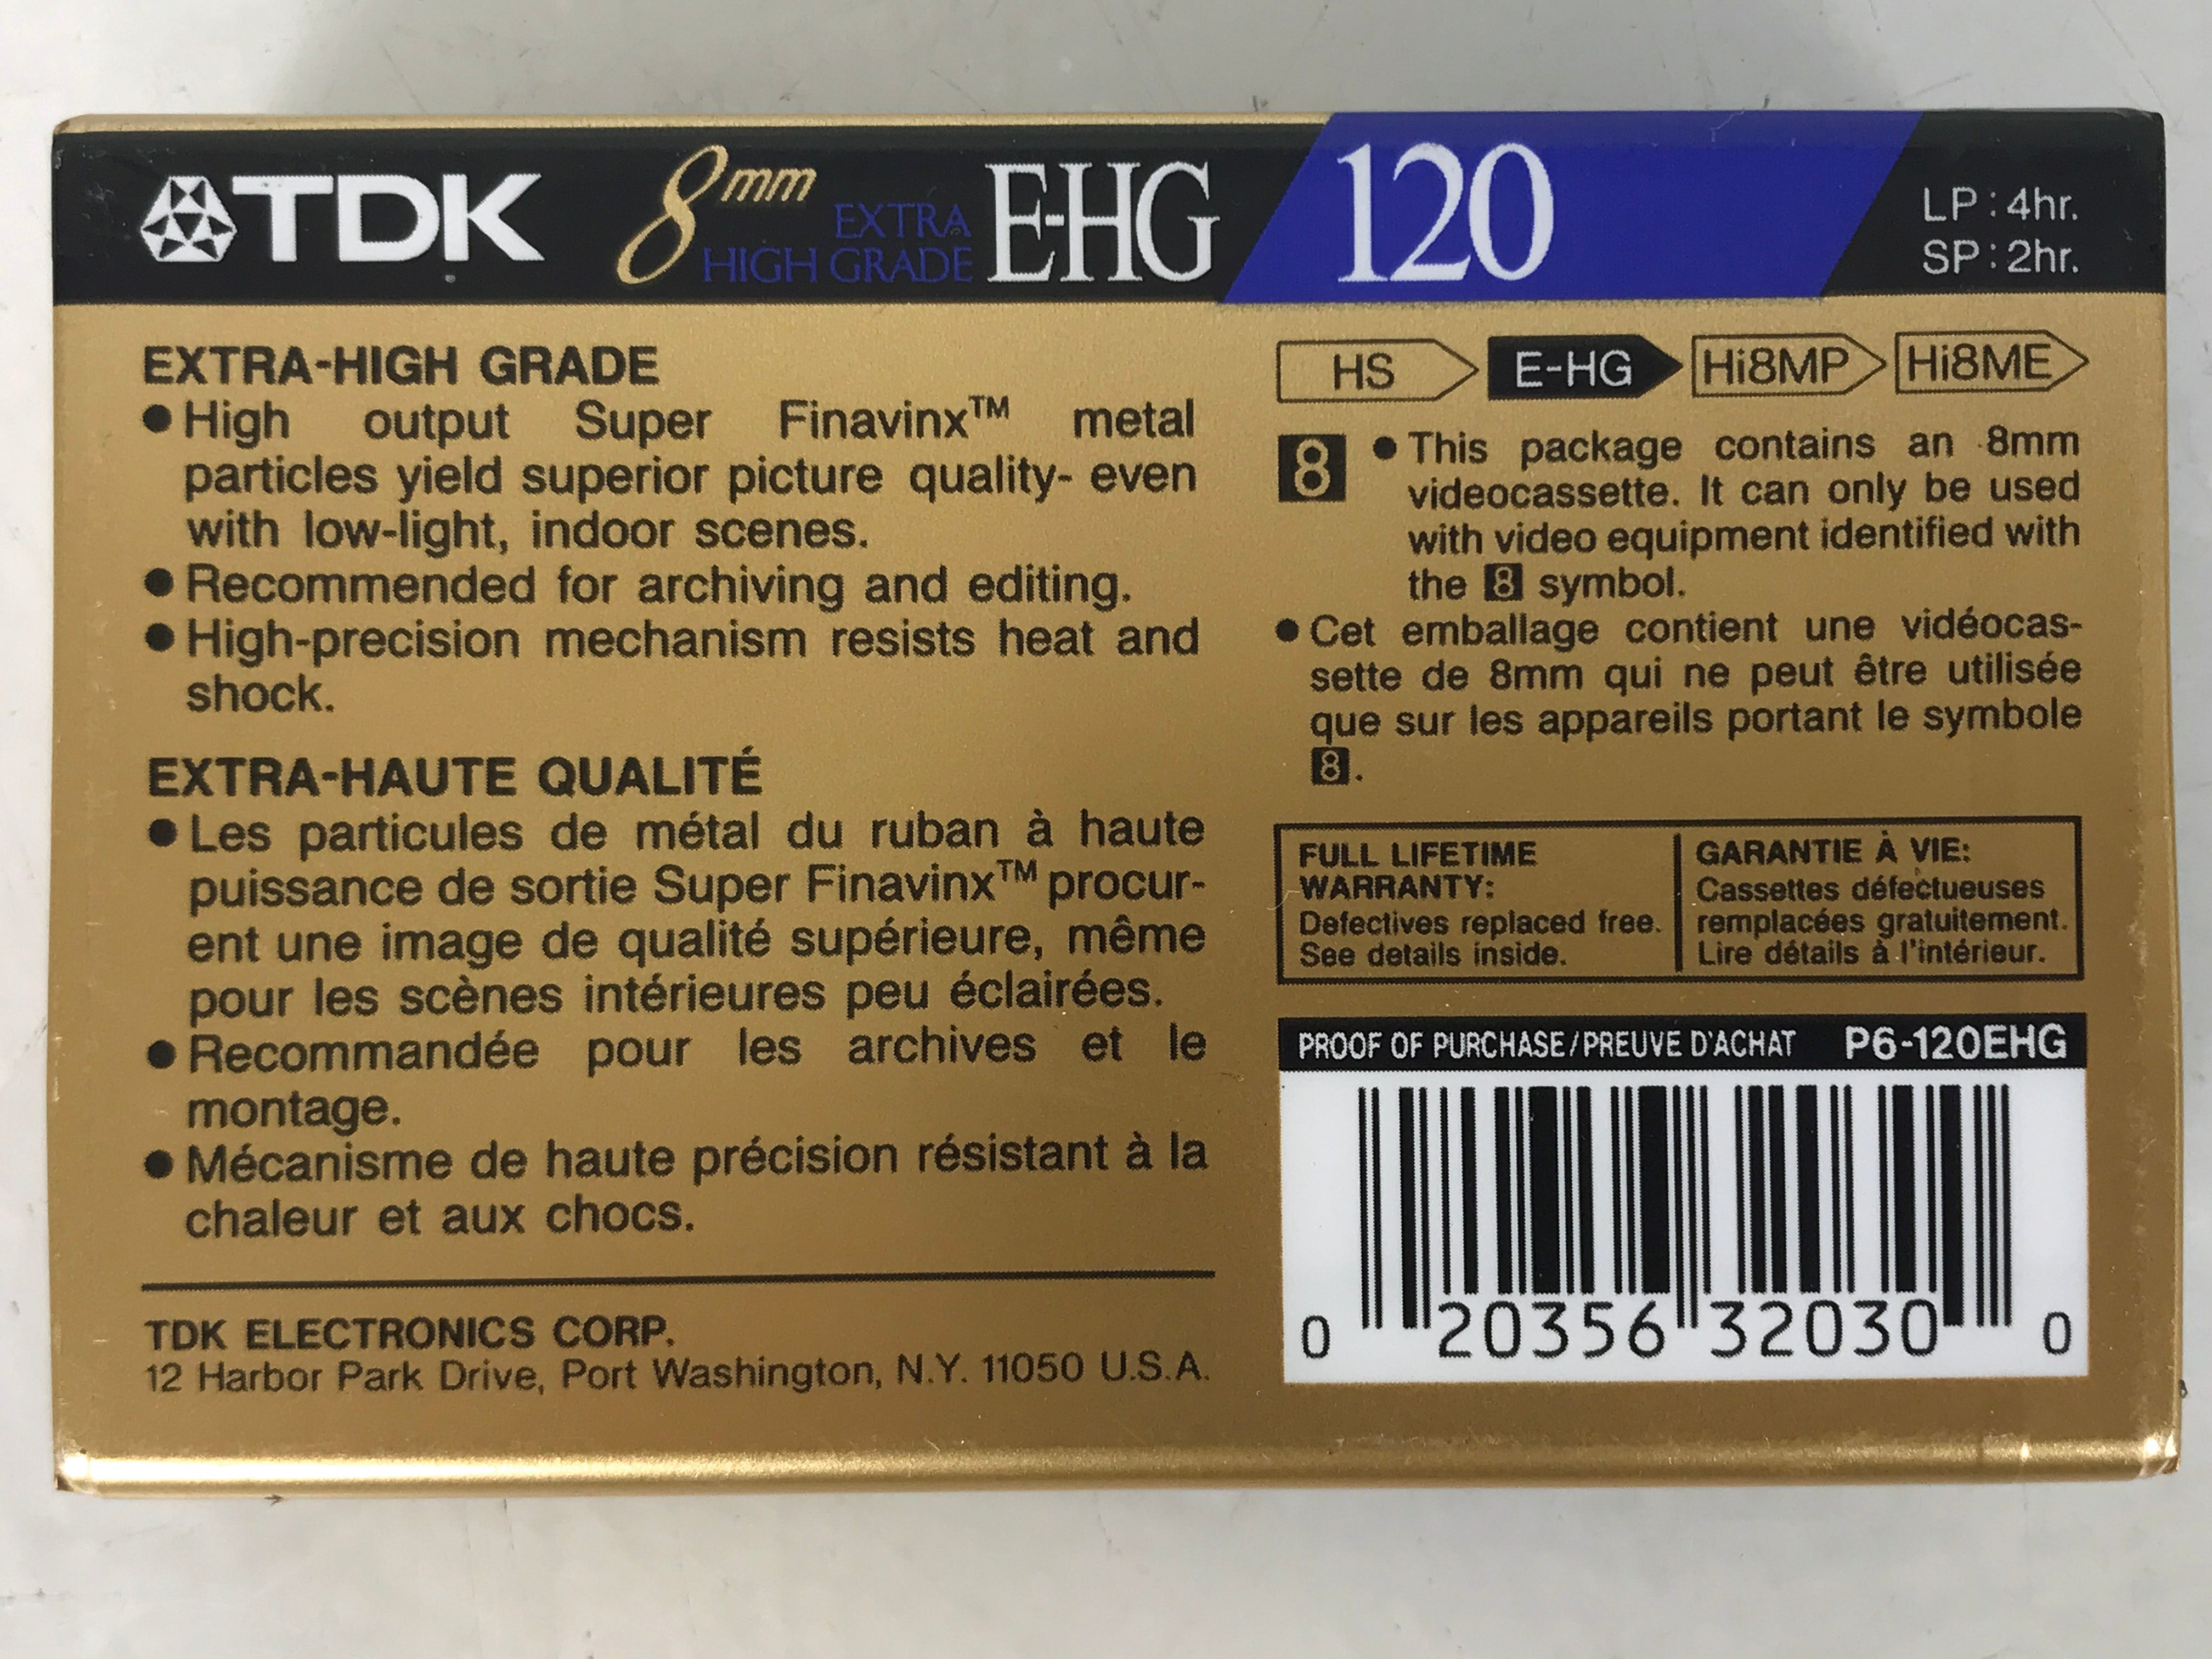 TDK 8mm E-HG120 Video Cassette